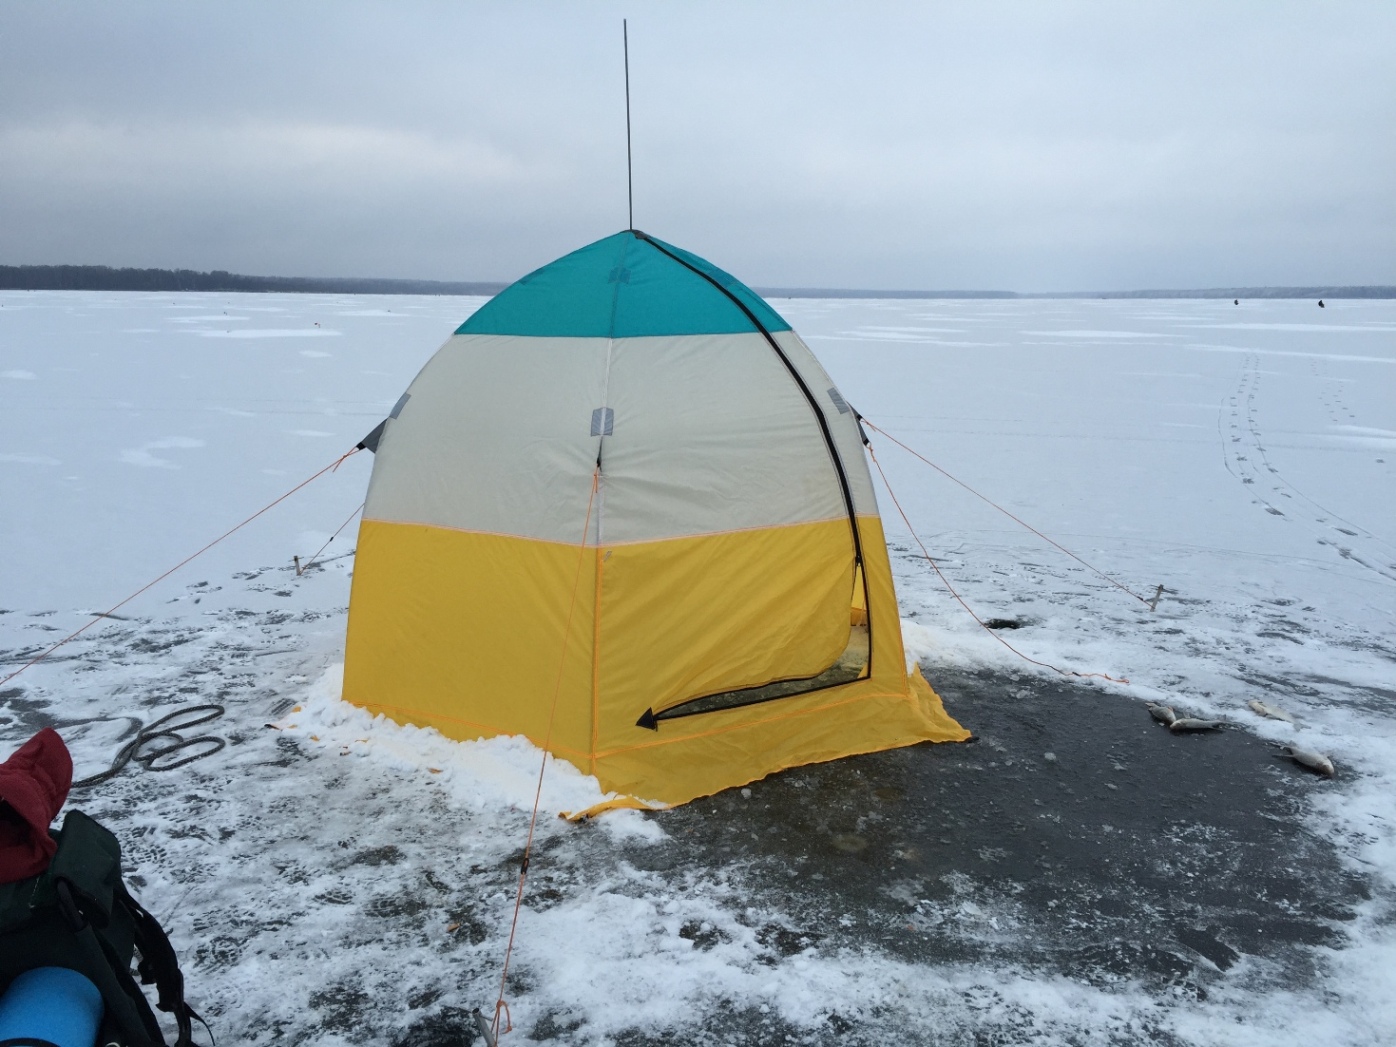 Зимняя рыбалка в палатке. Палатка на льду. Зимняя рыбалка на льду в палатке. Зимняя палатка для ночевки. Зимняя рыбалка в палатке с ночевкой.